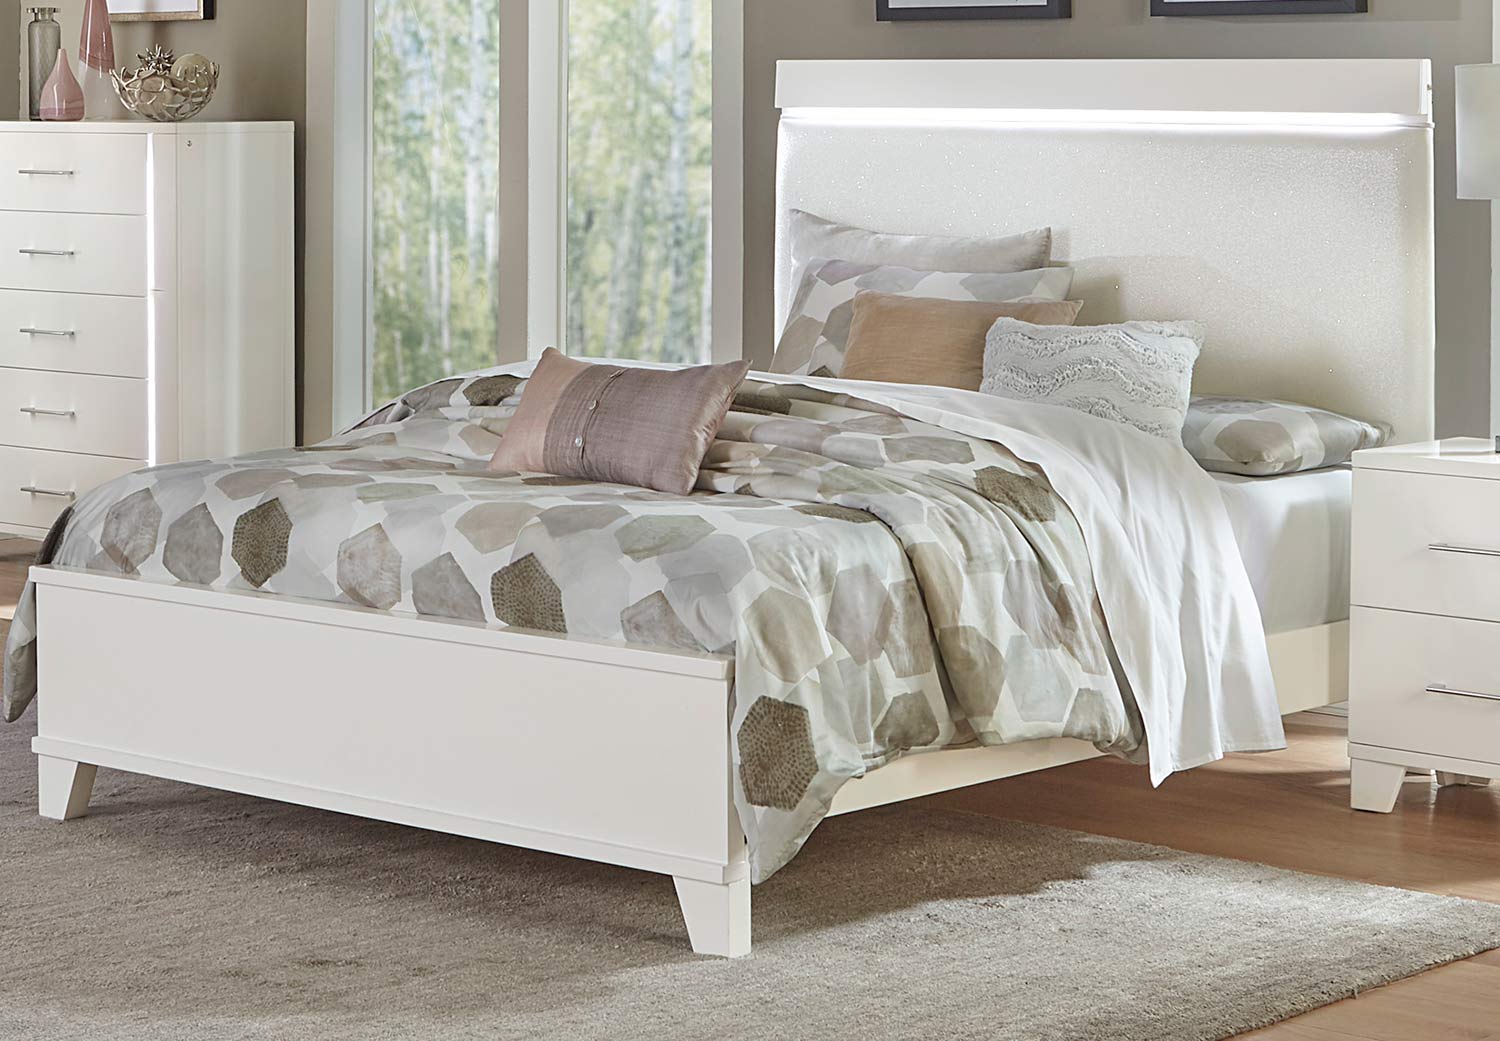 Homelegance Kerren or Keren Upholstered Bed with LED Lighting - White High Gloss